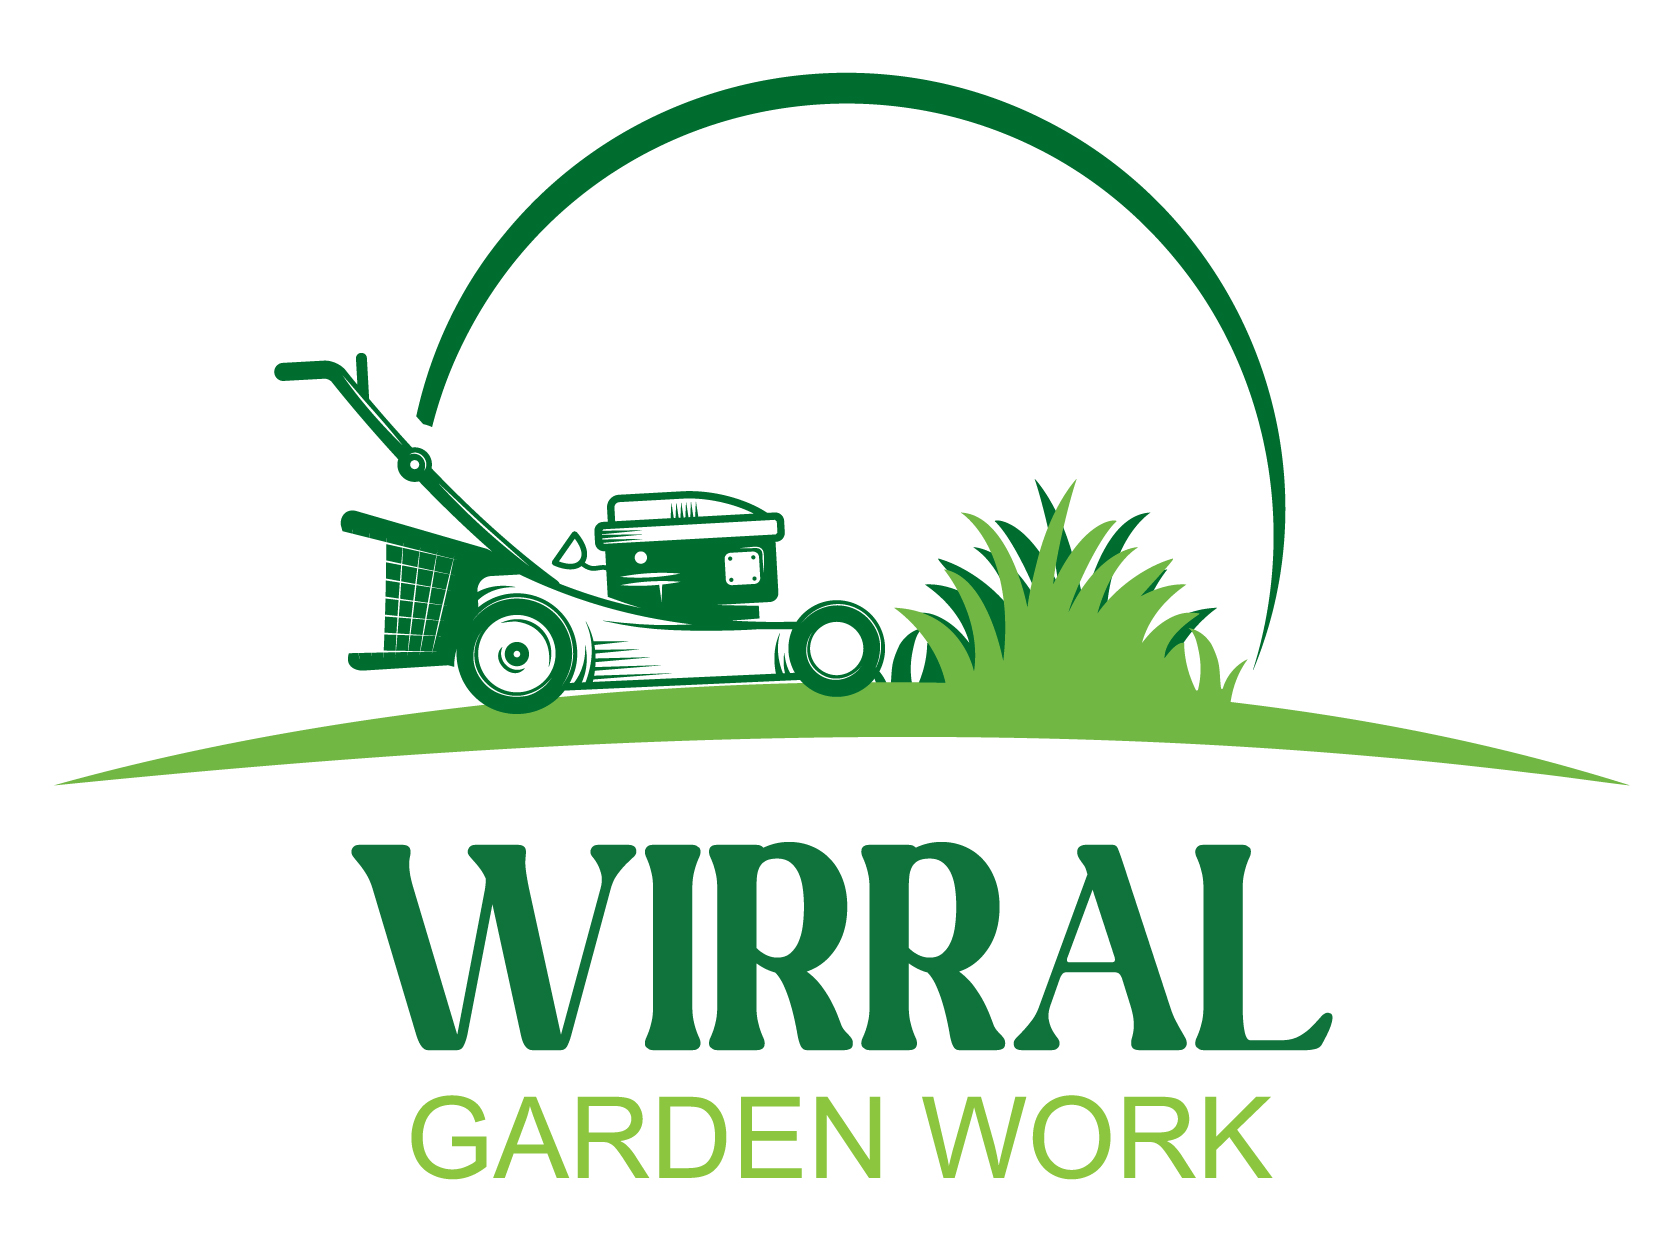 Wirral Gardening services lawn mowing wallasey gardening birkenhead gardening